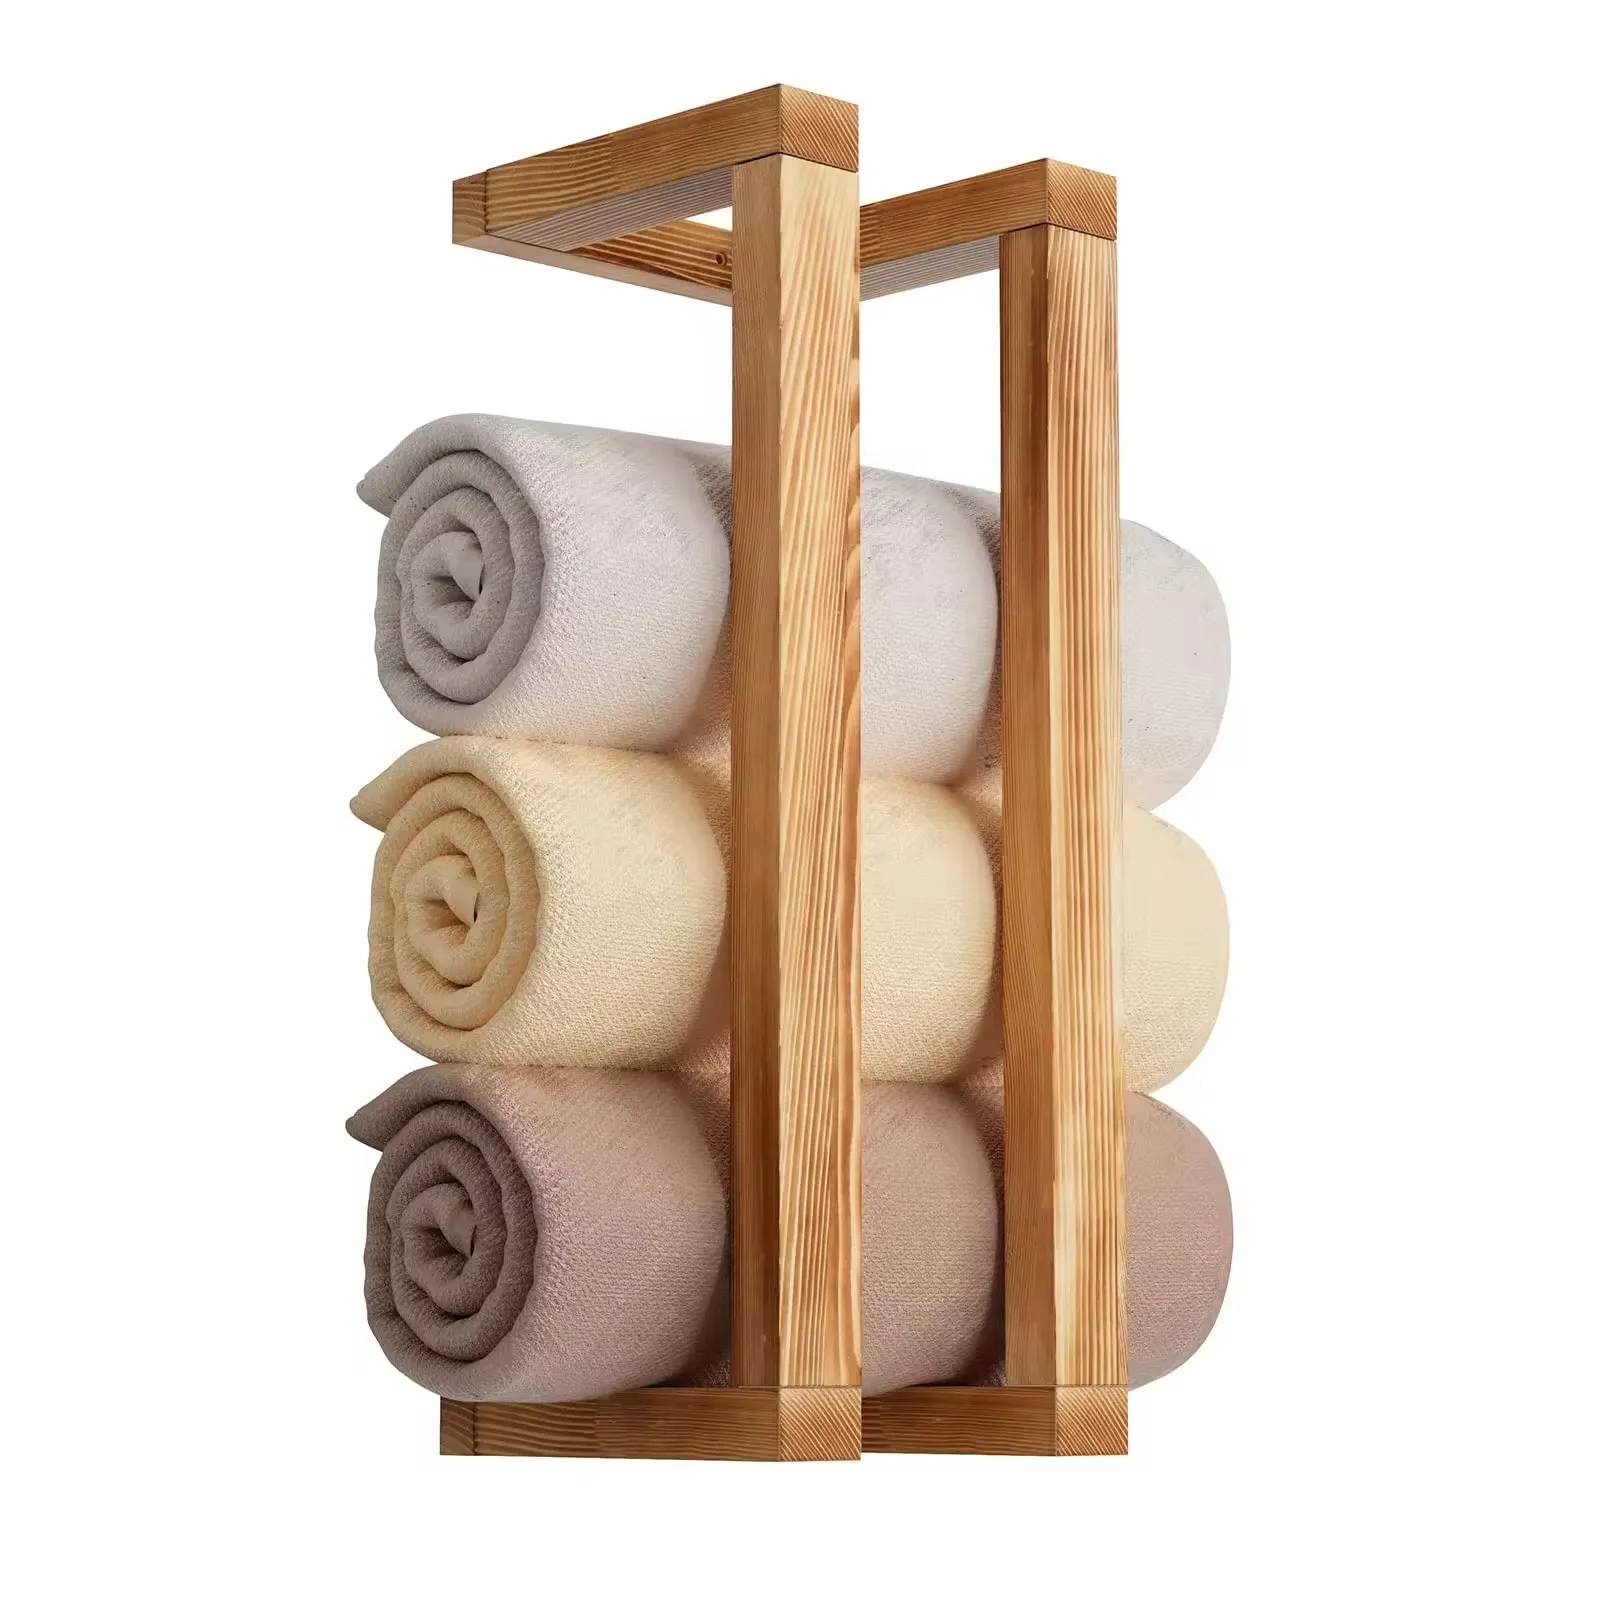 Ownswing-Toallero de madera para baño, toallero de pared, estante de toalla decorativo para organizador, almacenamiento de mantas